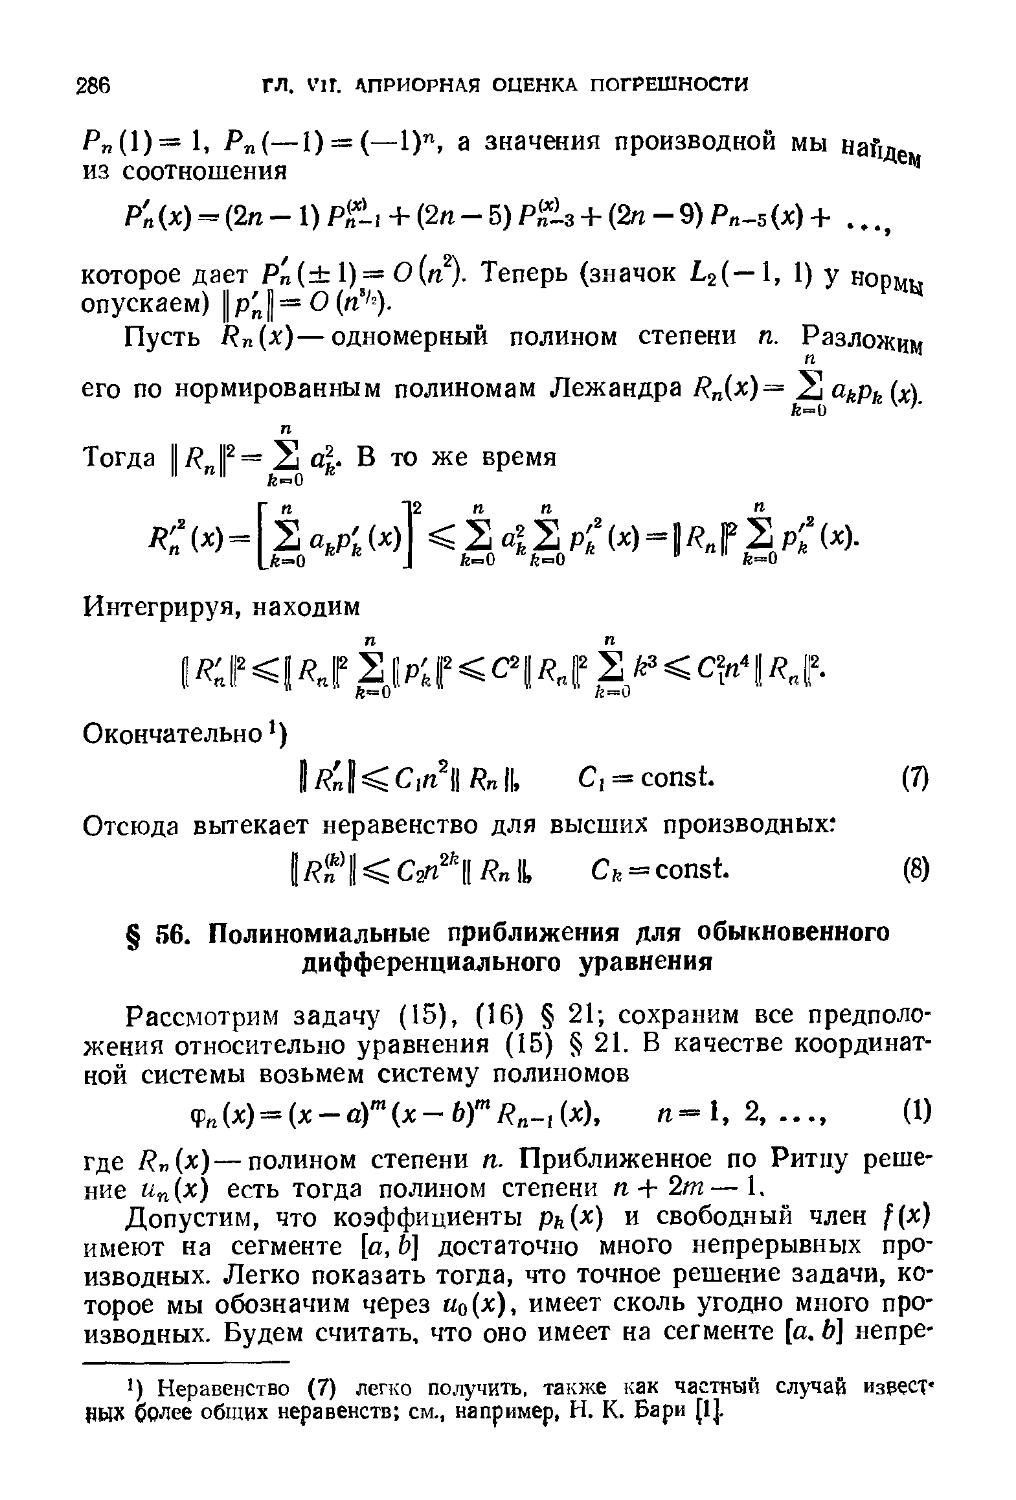 § 56. Полиномиальные приближения для обыкновенного дифференциального уравнения